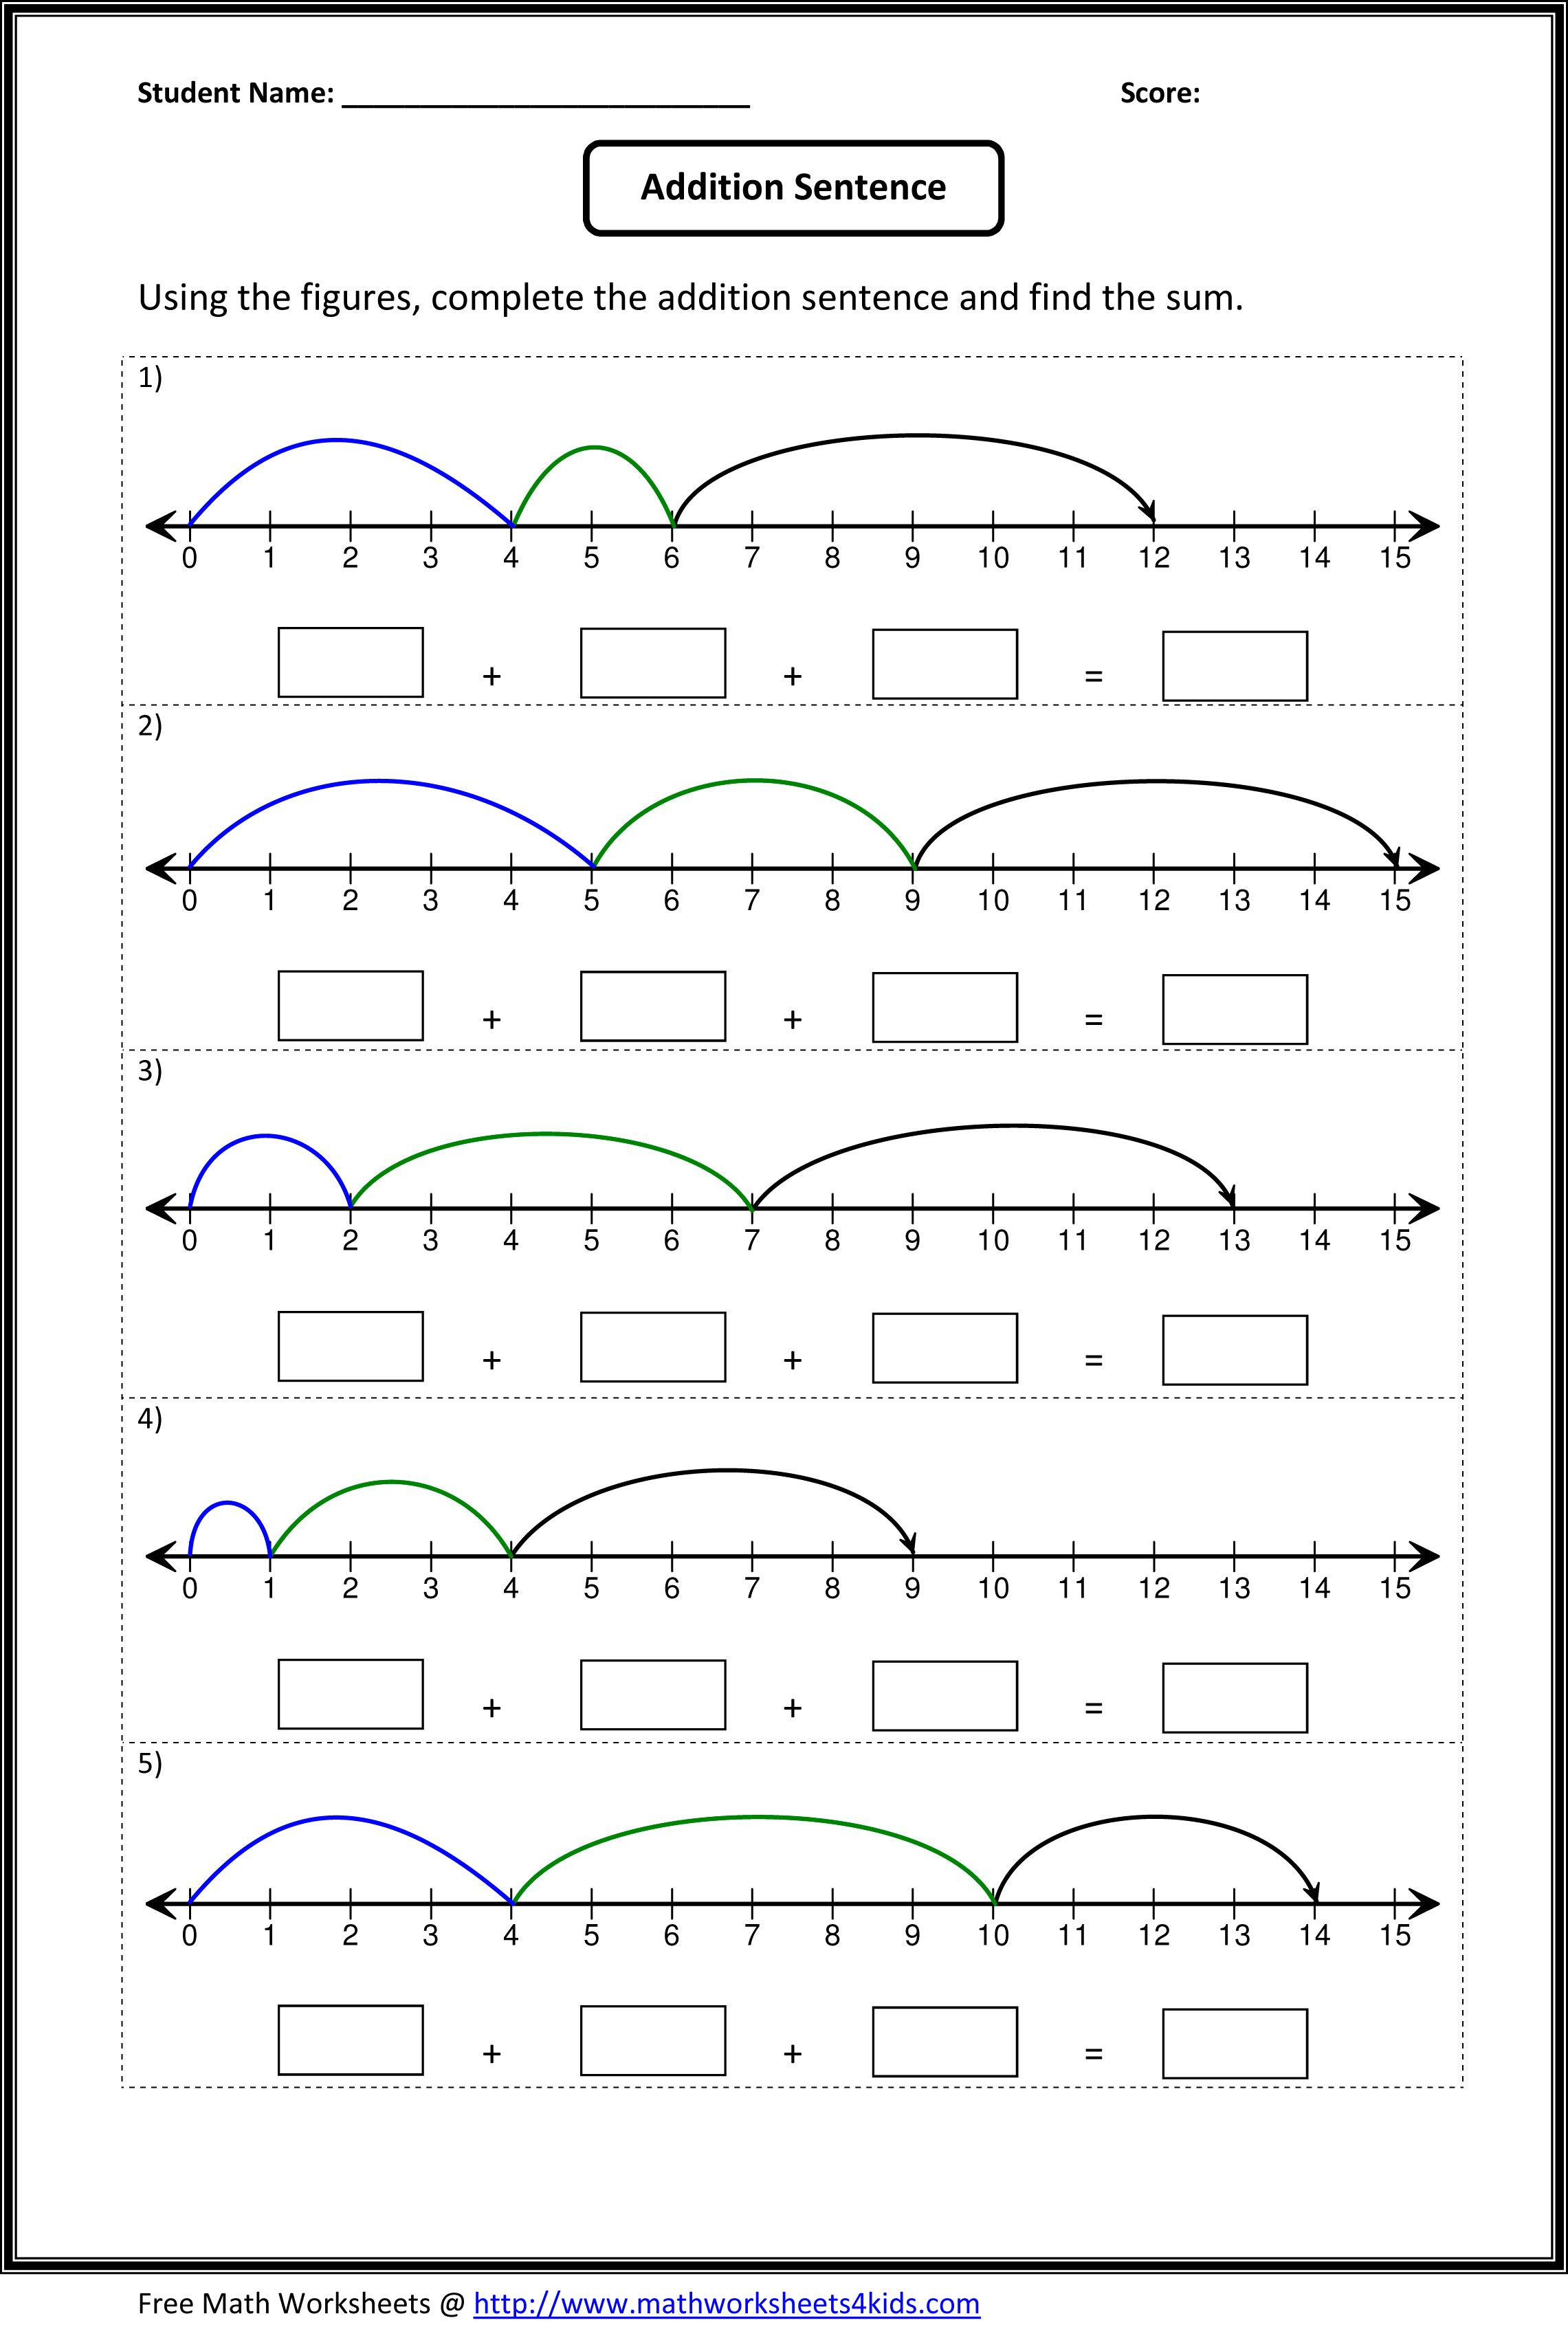 Kindergarten Number Line Worksheet Number Line Worksheets Printable Number Line Templates